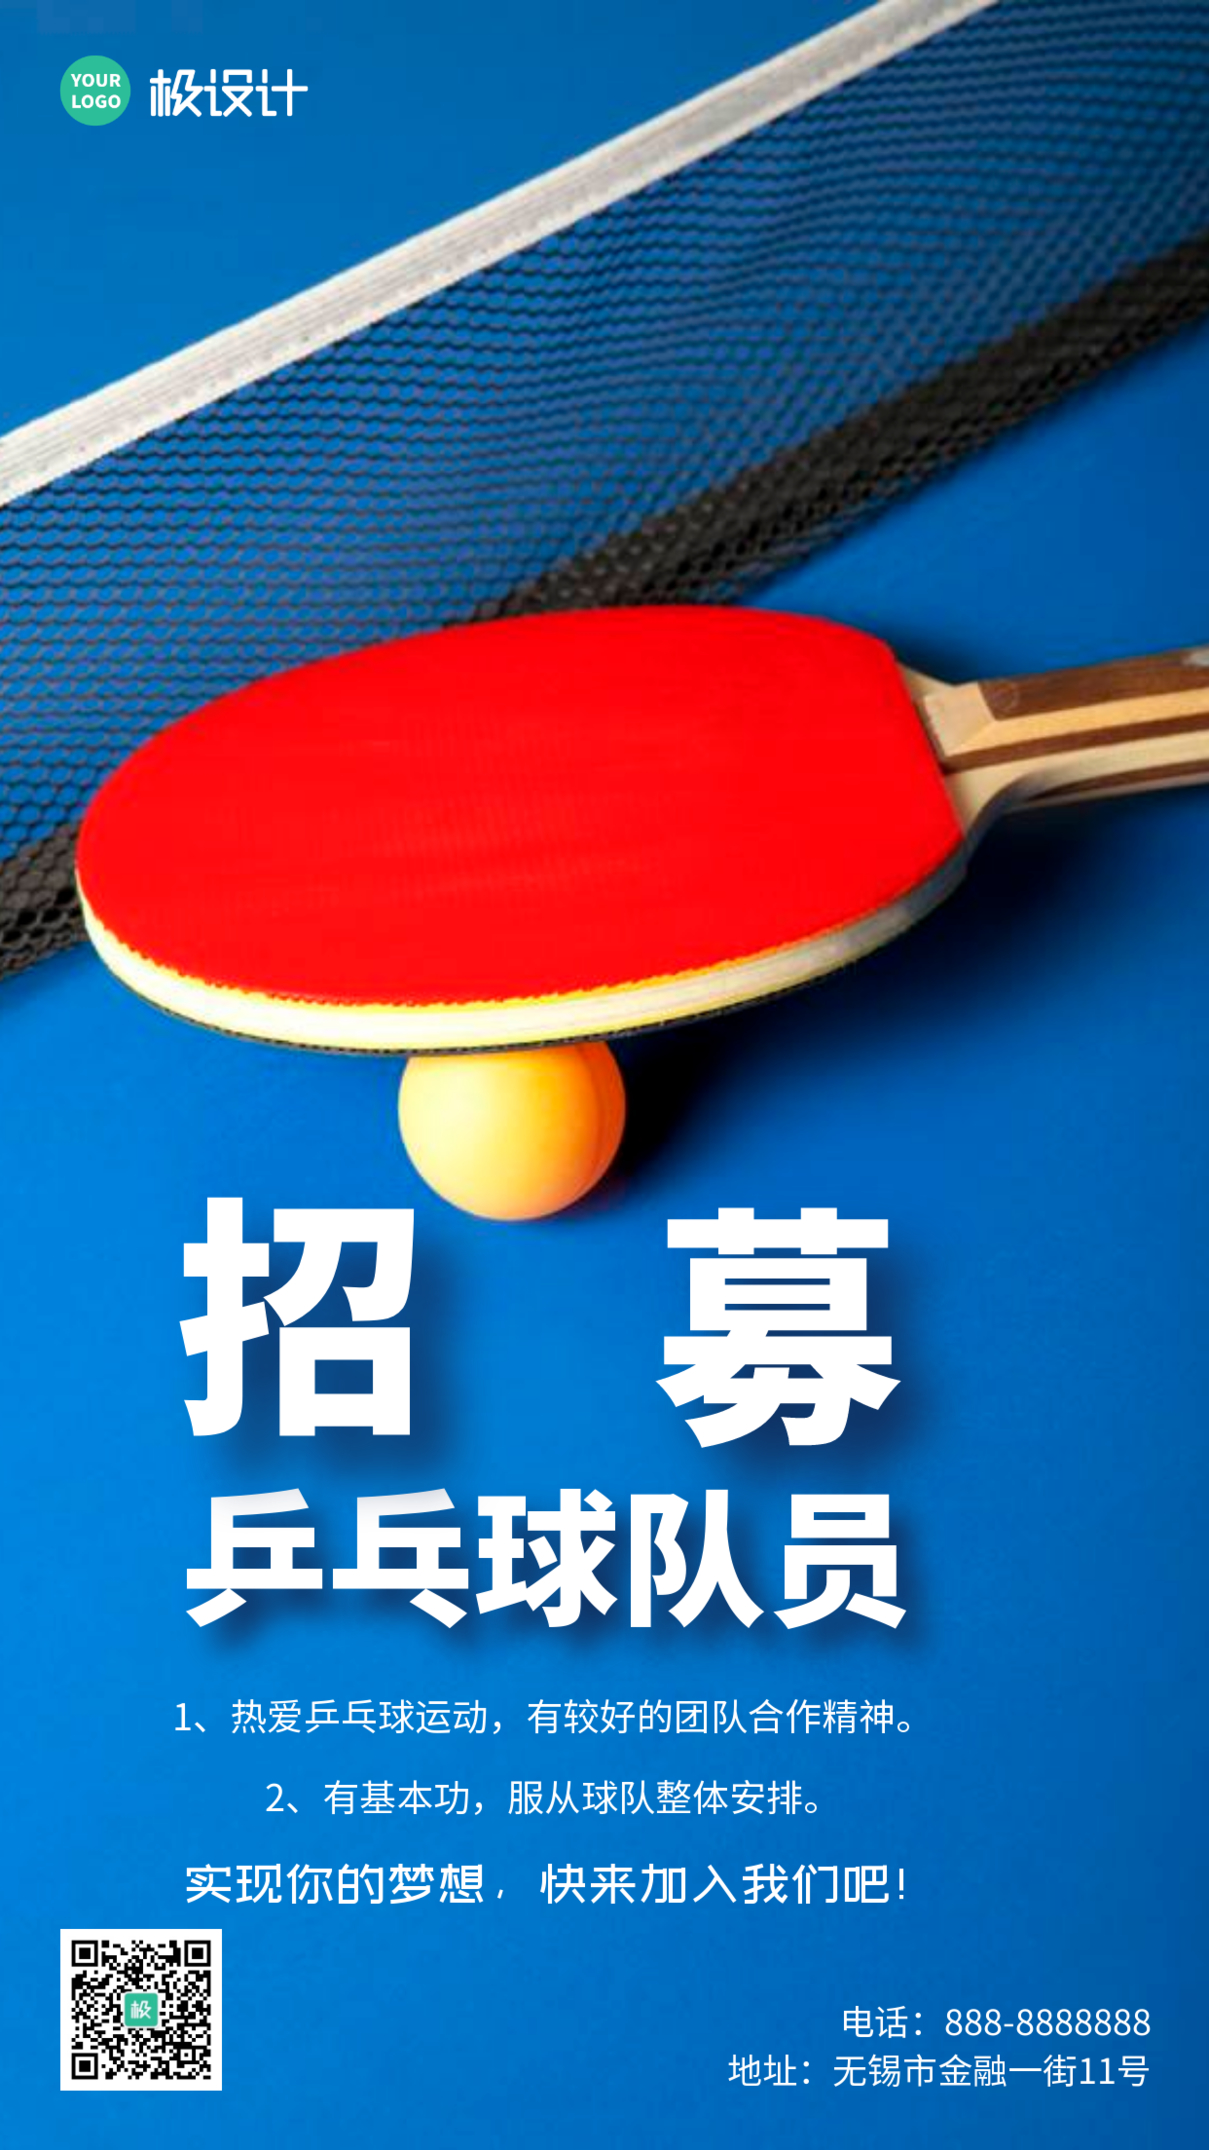 简约大气蓝色乒乓球兴趣队招募队员宣传摄影图海报